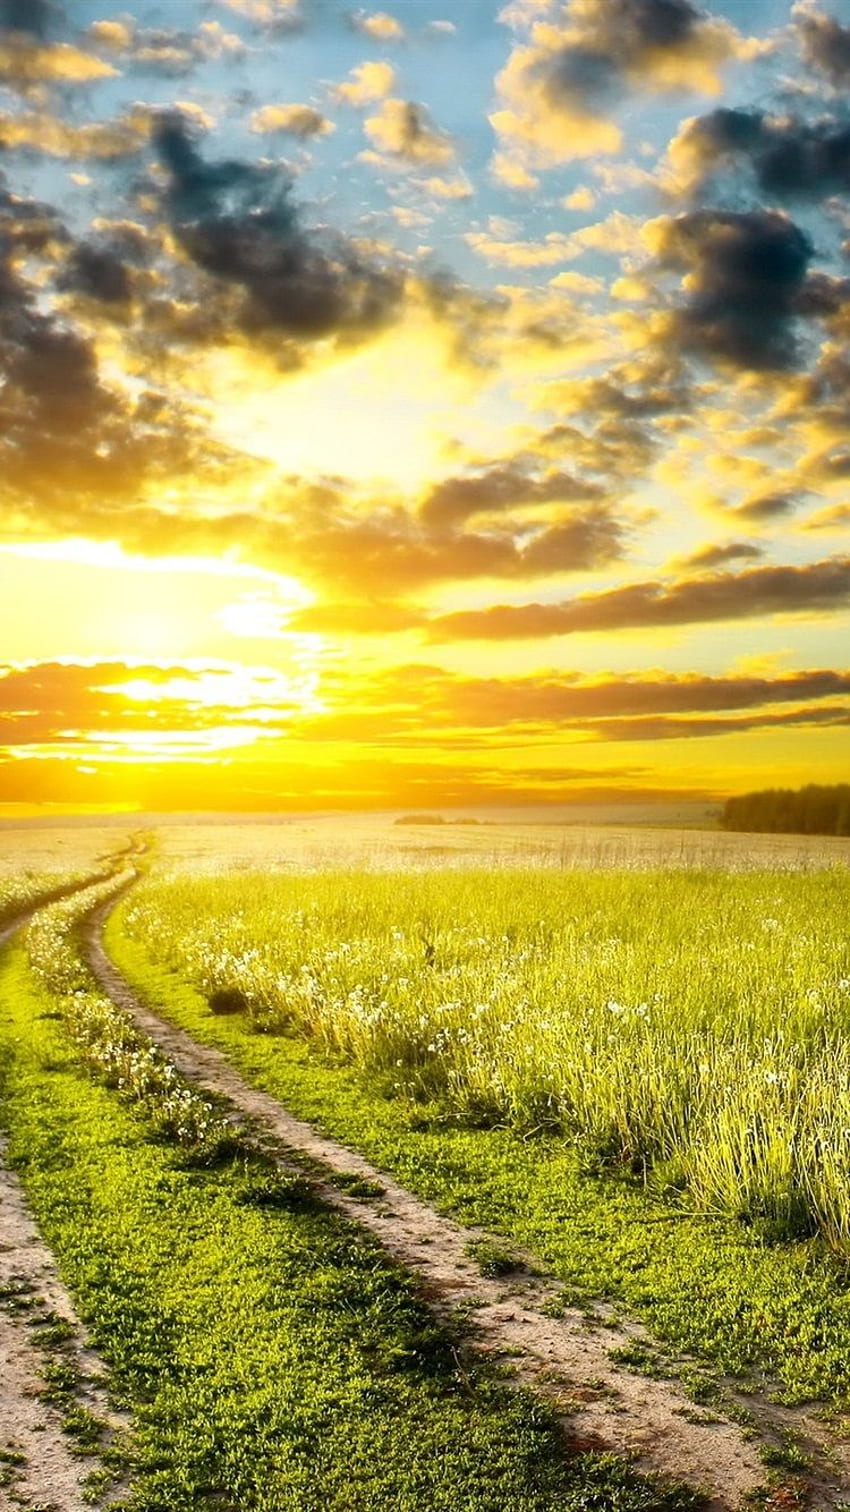 Bình minh, đồng cỏ, đường, mây, iPhone 8 7: Đây là một bức tranh của thiên nhiên đầy màu sắc với một bầu trời rực rỡ, đồng cỏ tươi tốt và mây trôi qua. Đặt làm hình nền cho iPhone của bạn để trải nghiệm vẻ đẹp của thiên nhiên mỗi ngày. Hãy bắt đầu một ngày mới với tinh thần mới và cảm giác sảng khoái.